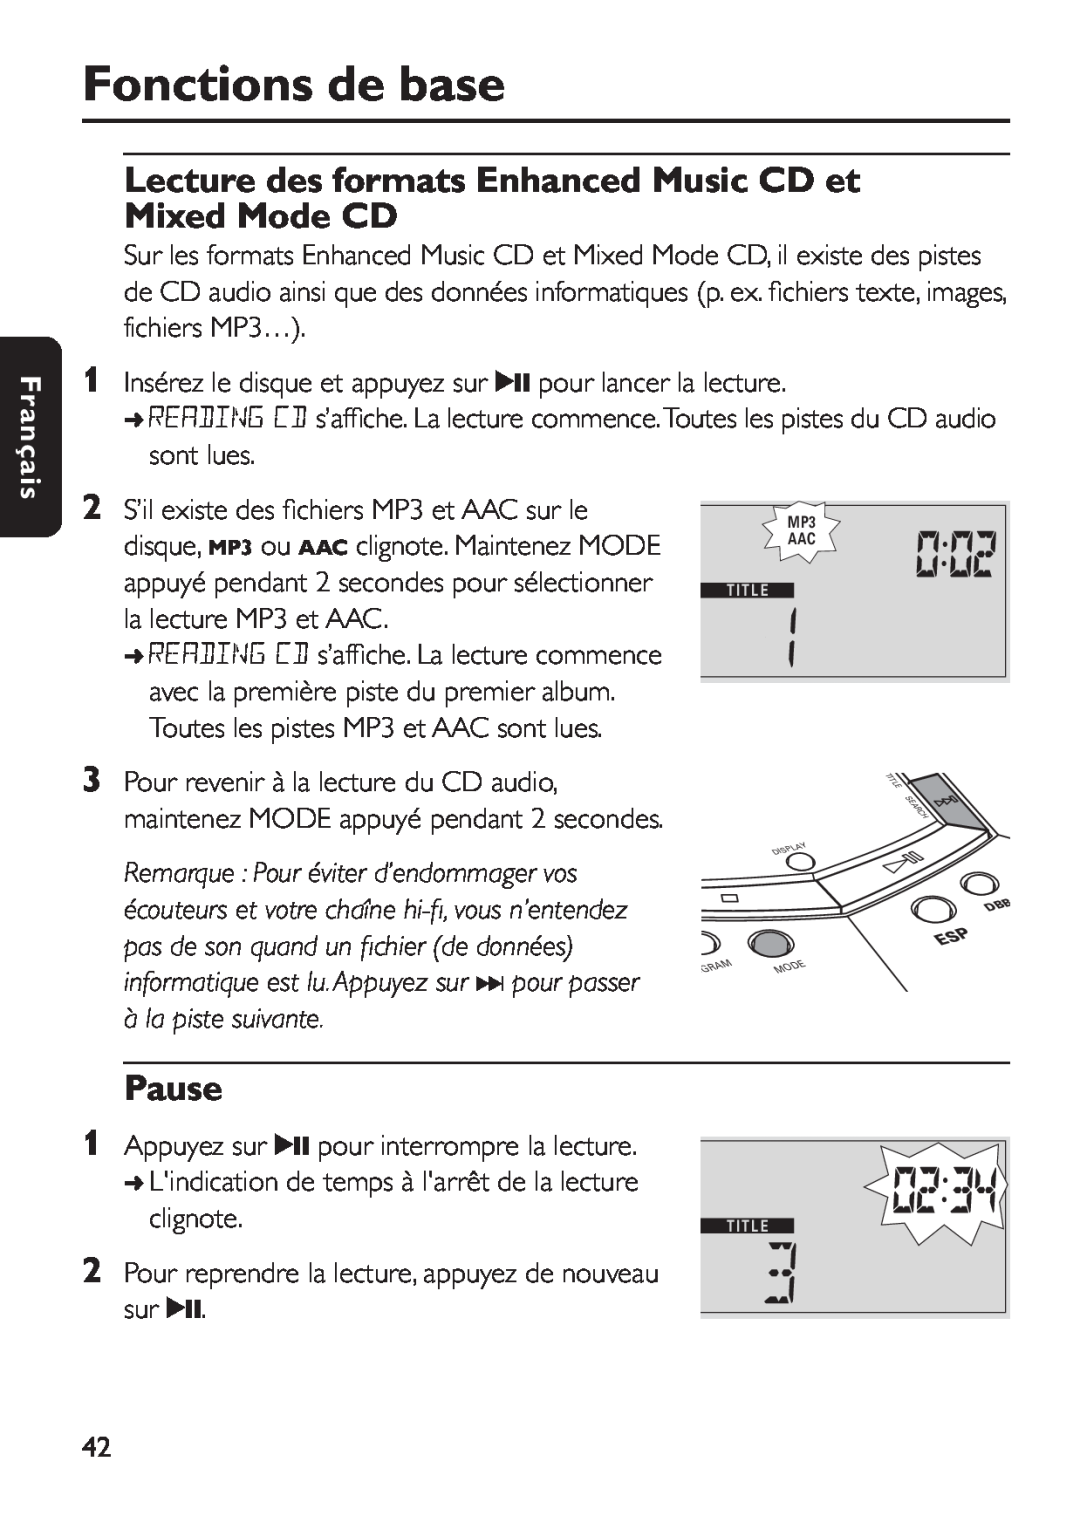 Philips EXP 501/00 manual Lecture des formats Enhanced Music CD et Mixed Mode CD, Fonctions de base, Pause, Français 